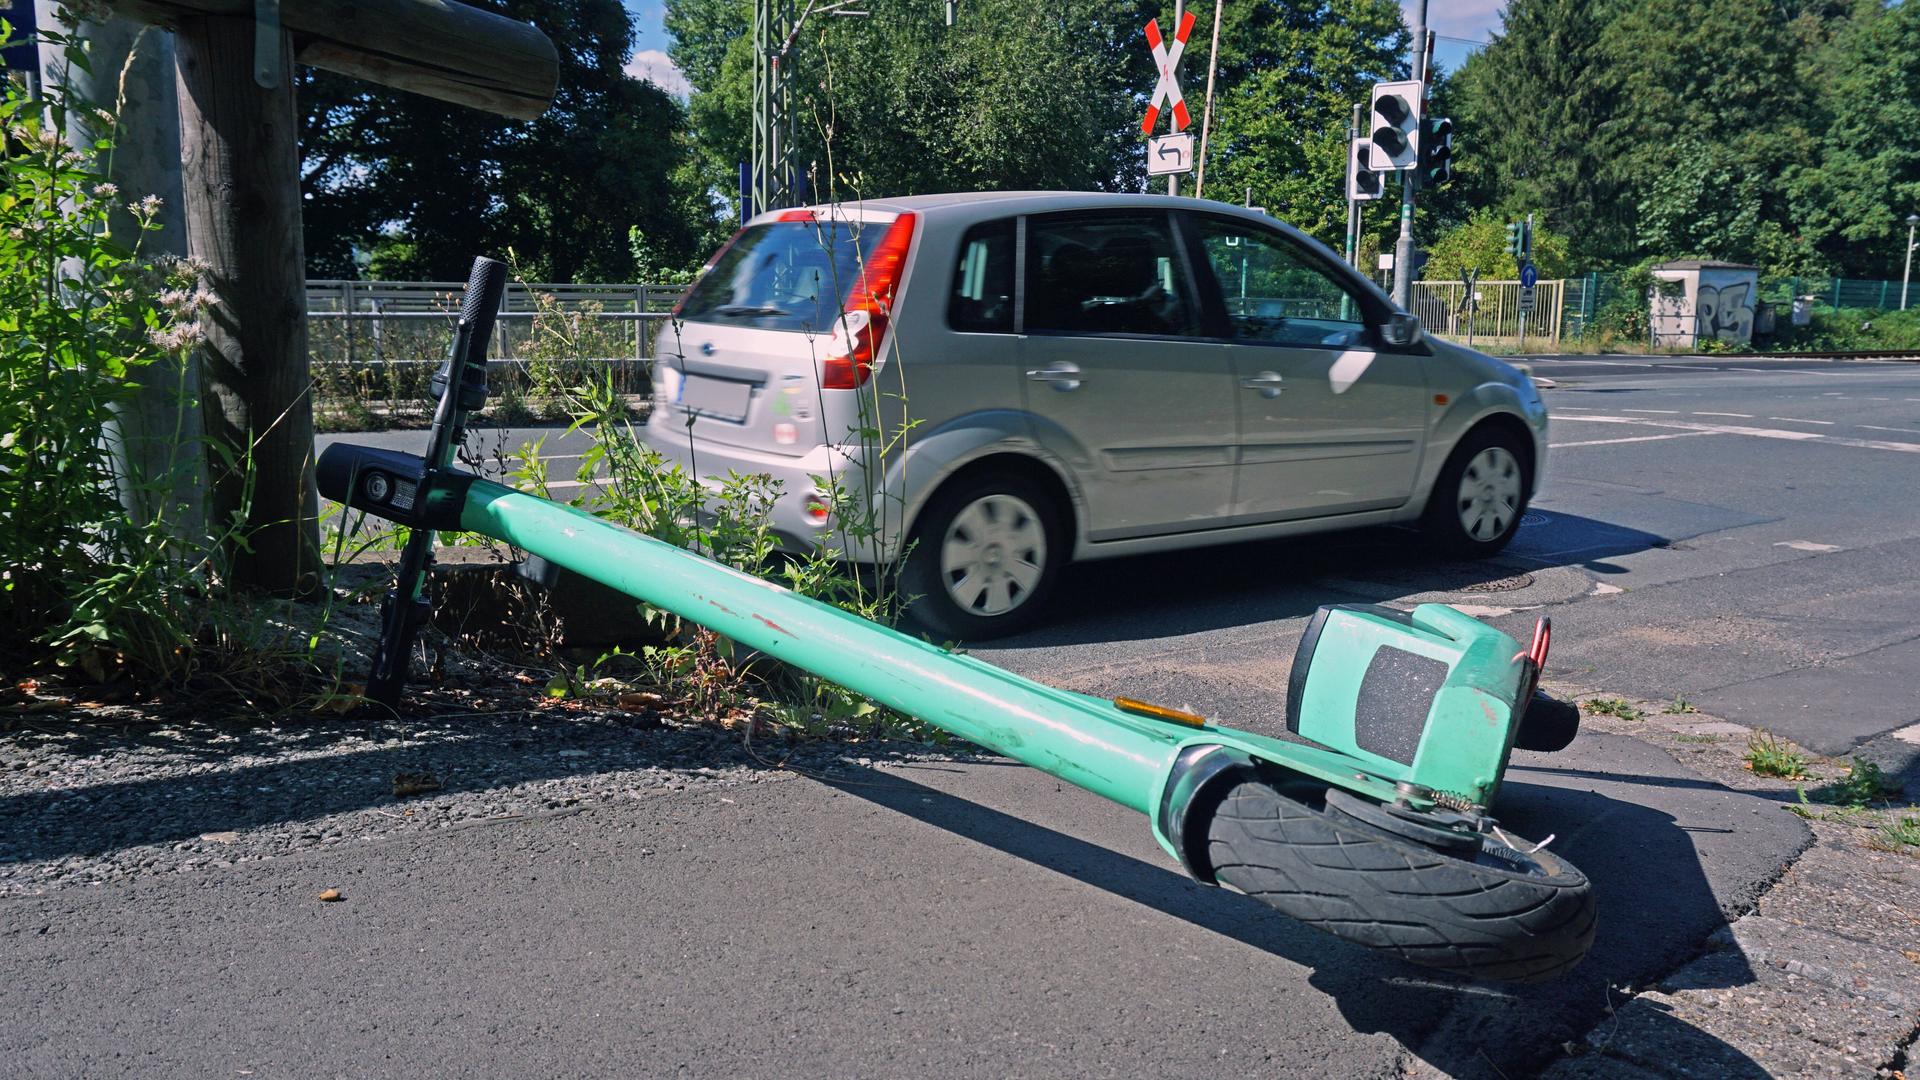 Elektro-Tretroller in der Stadt Ein sogenannter E-Scooter liegt umgeworfen auf einem Bürgersteig am Straßenrand Essen Nordrhein-Westfalen Deutschland.